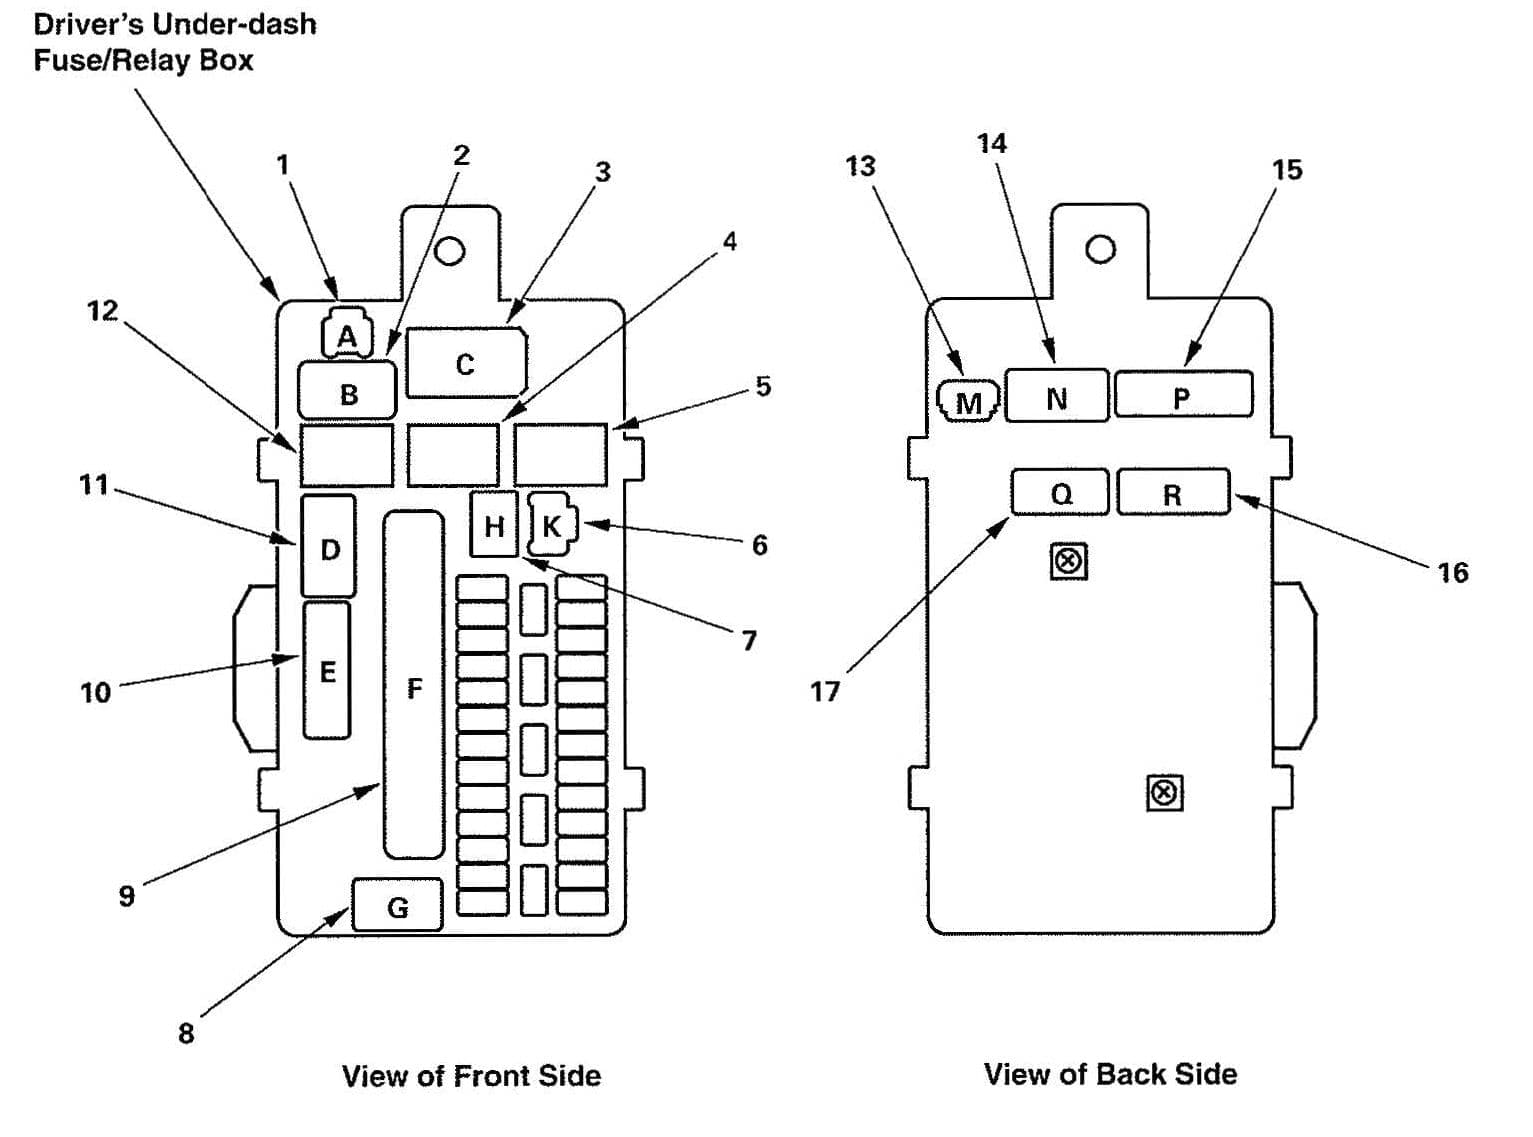 Acura TL - fuse box diagram - driver's under-dash box